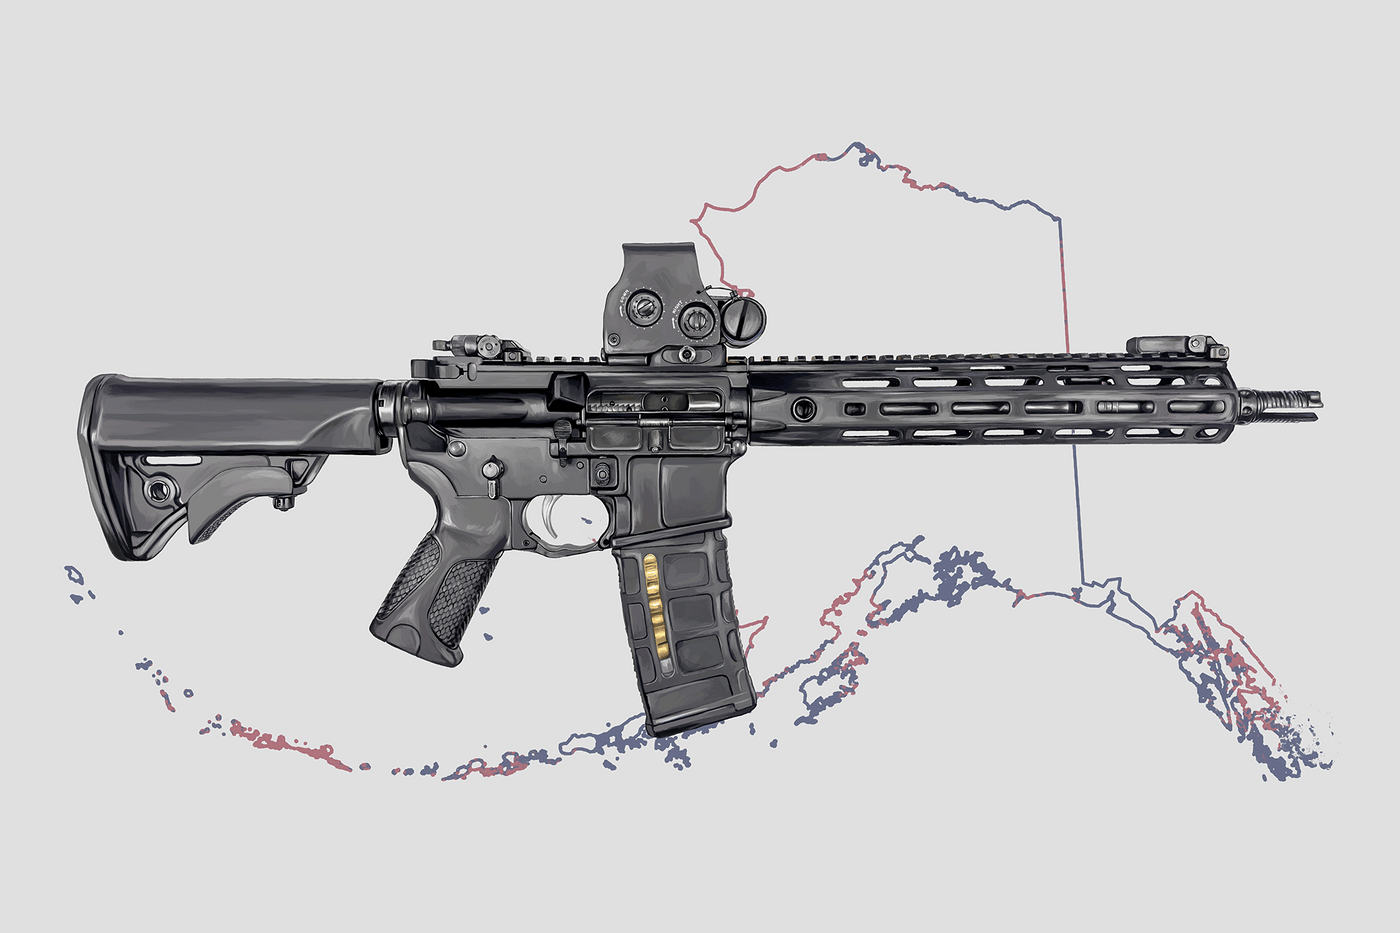 Defending Freedom - Alaska- AR-15 State Painting (Minimal)